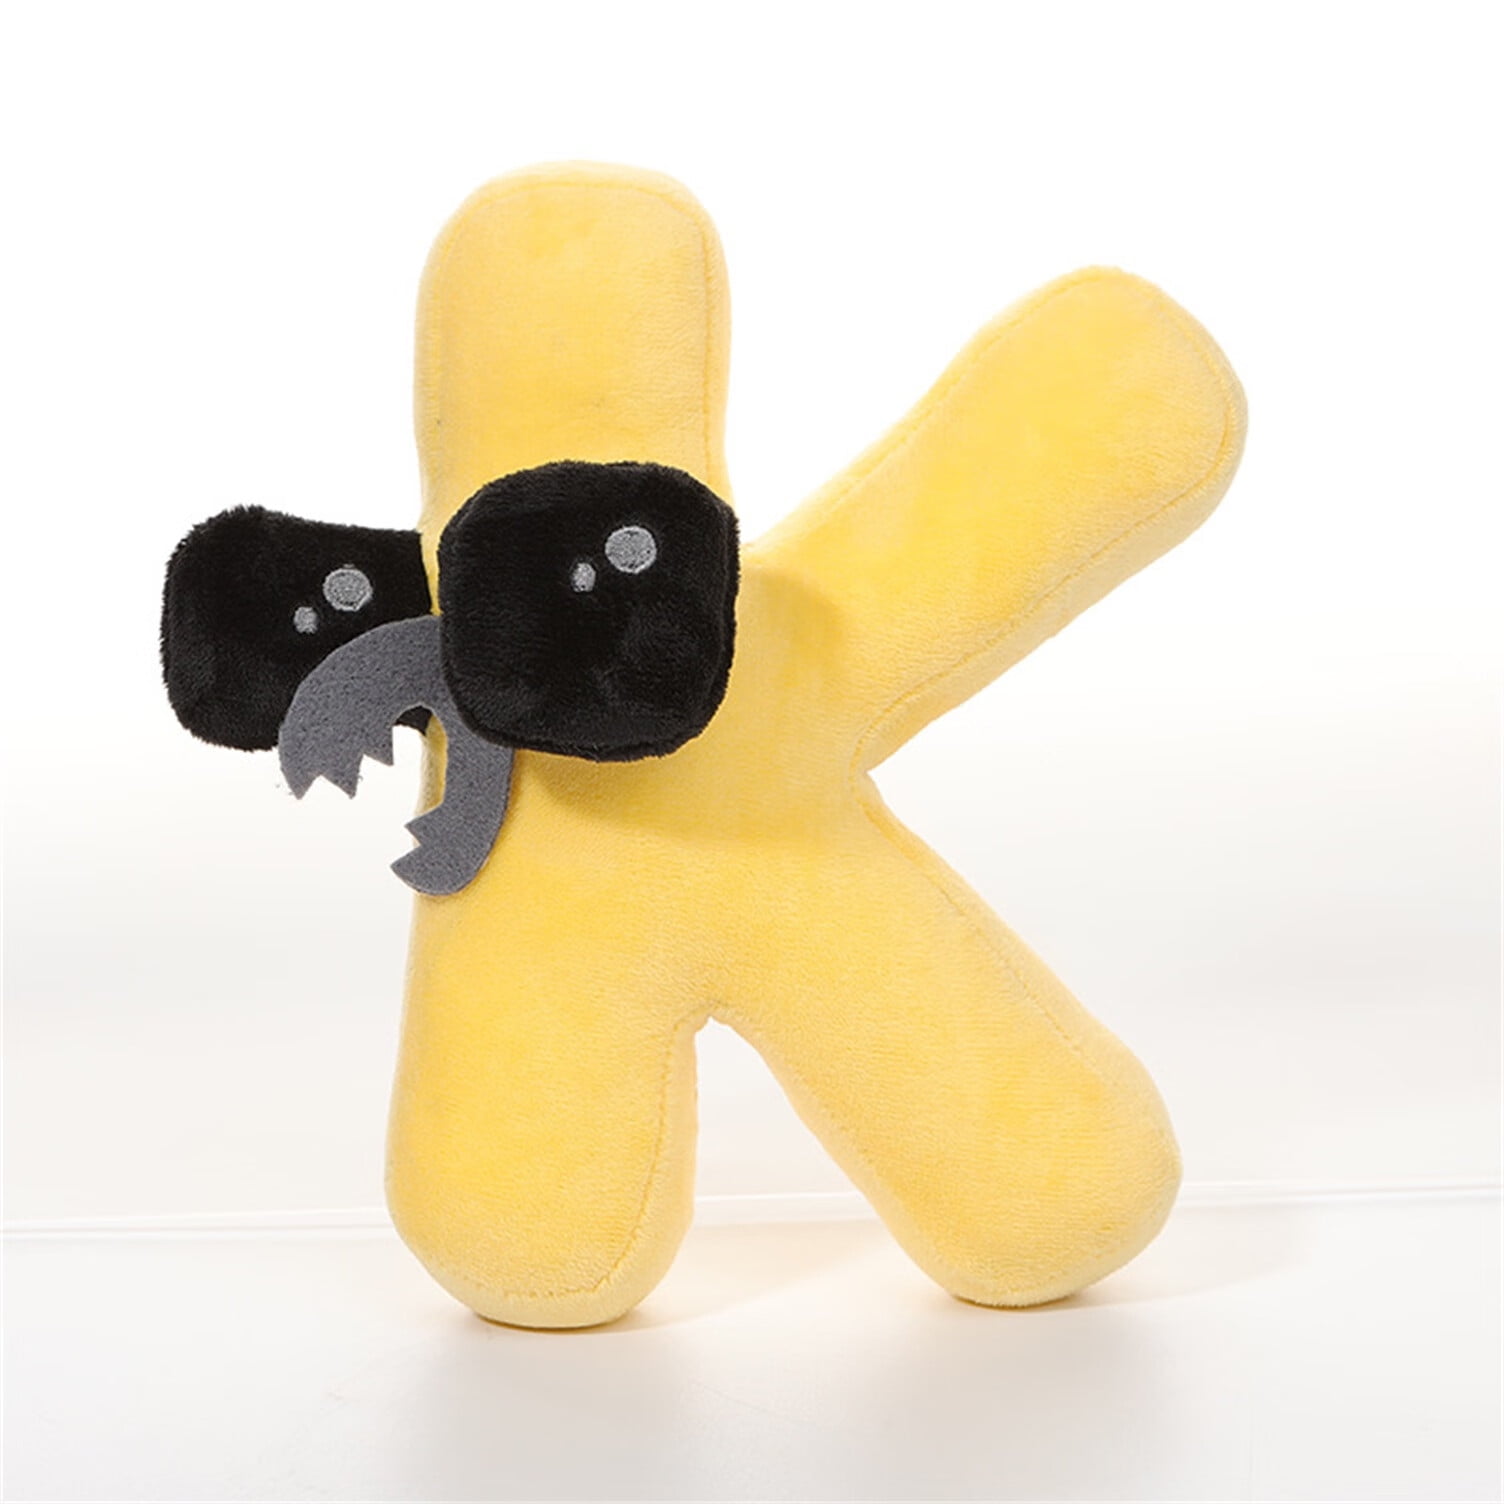  Vizethru Alphabet Lore Plush, Alphabet Lore Plush Animal  Toys, Fun Stuffed Alphabet Lore Plush Figure Suitable For Gift Giving Fans